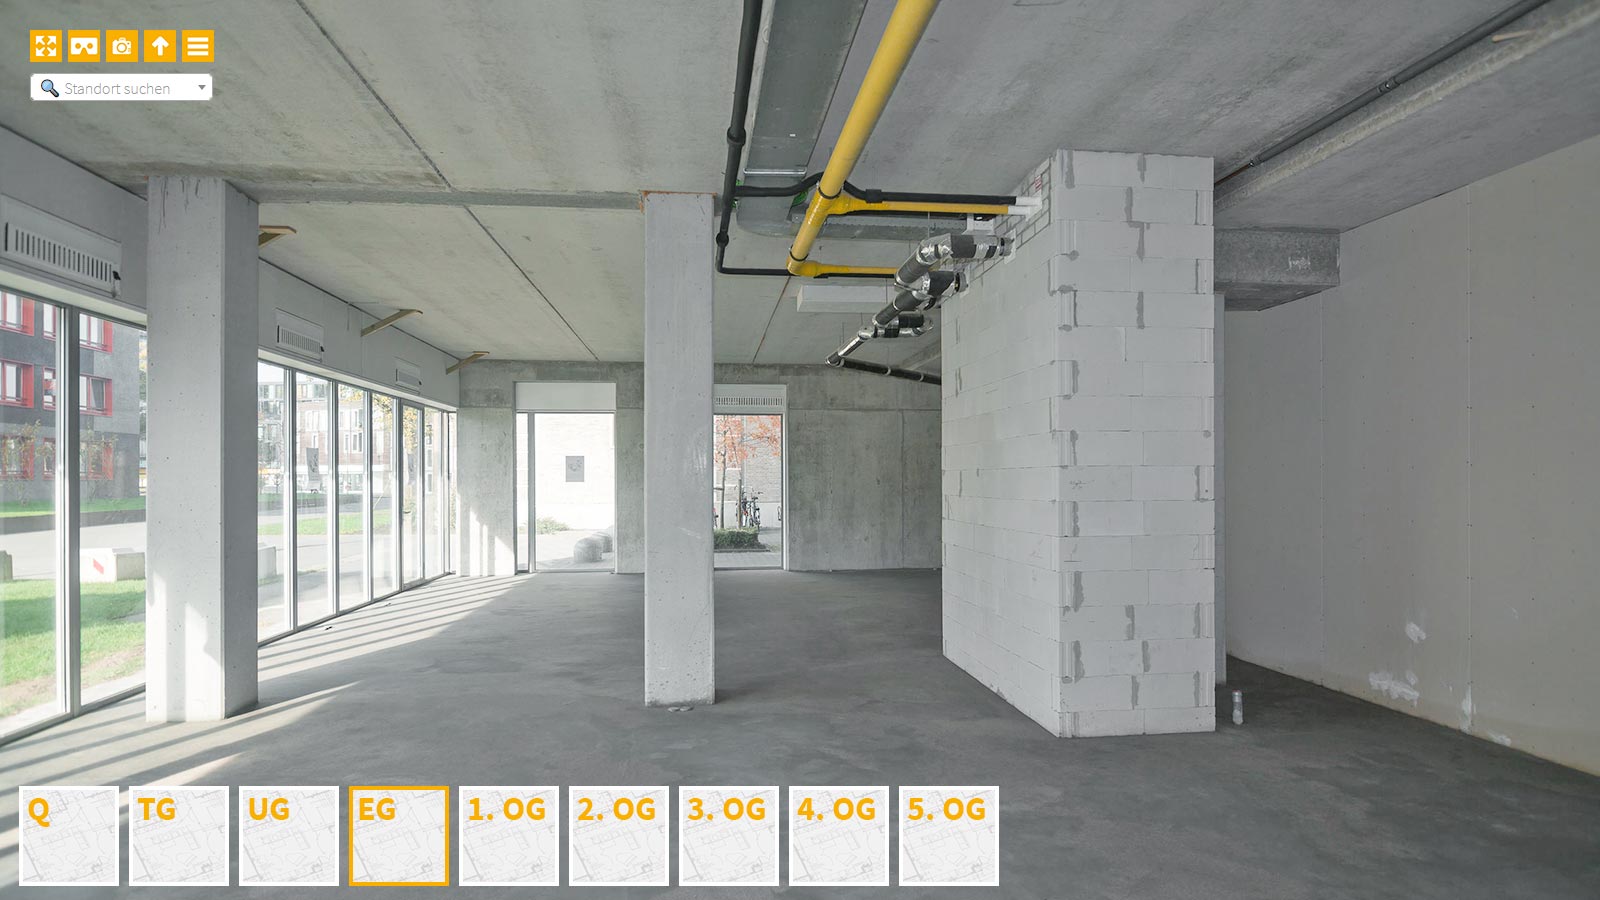 Baudokumentation 360 Grad bei gestörten Projekten in 


	


	


	


	


	


	


	


	


	


	Potsdam









, Bilddokumentation als virtueller Rundgang